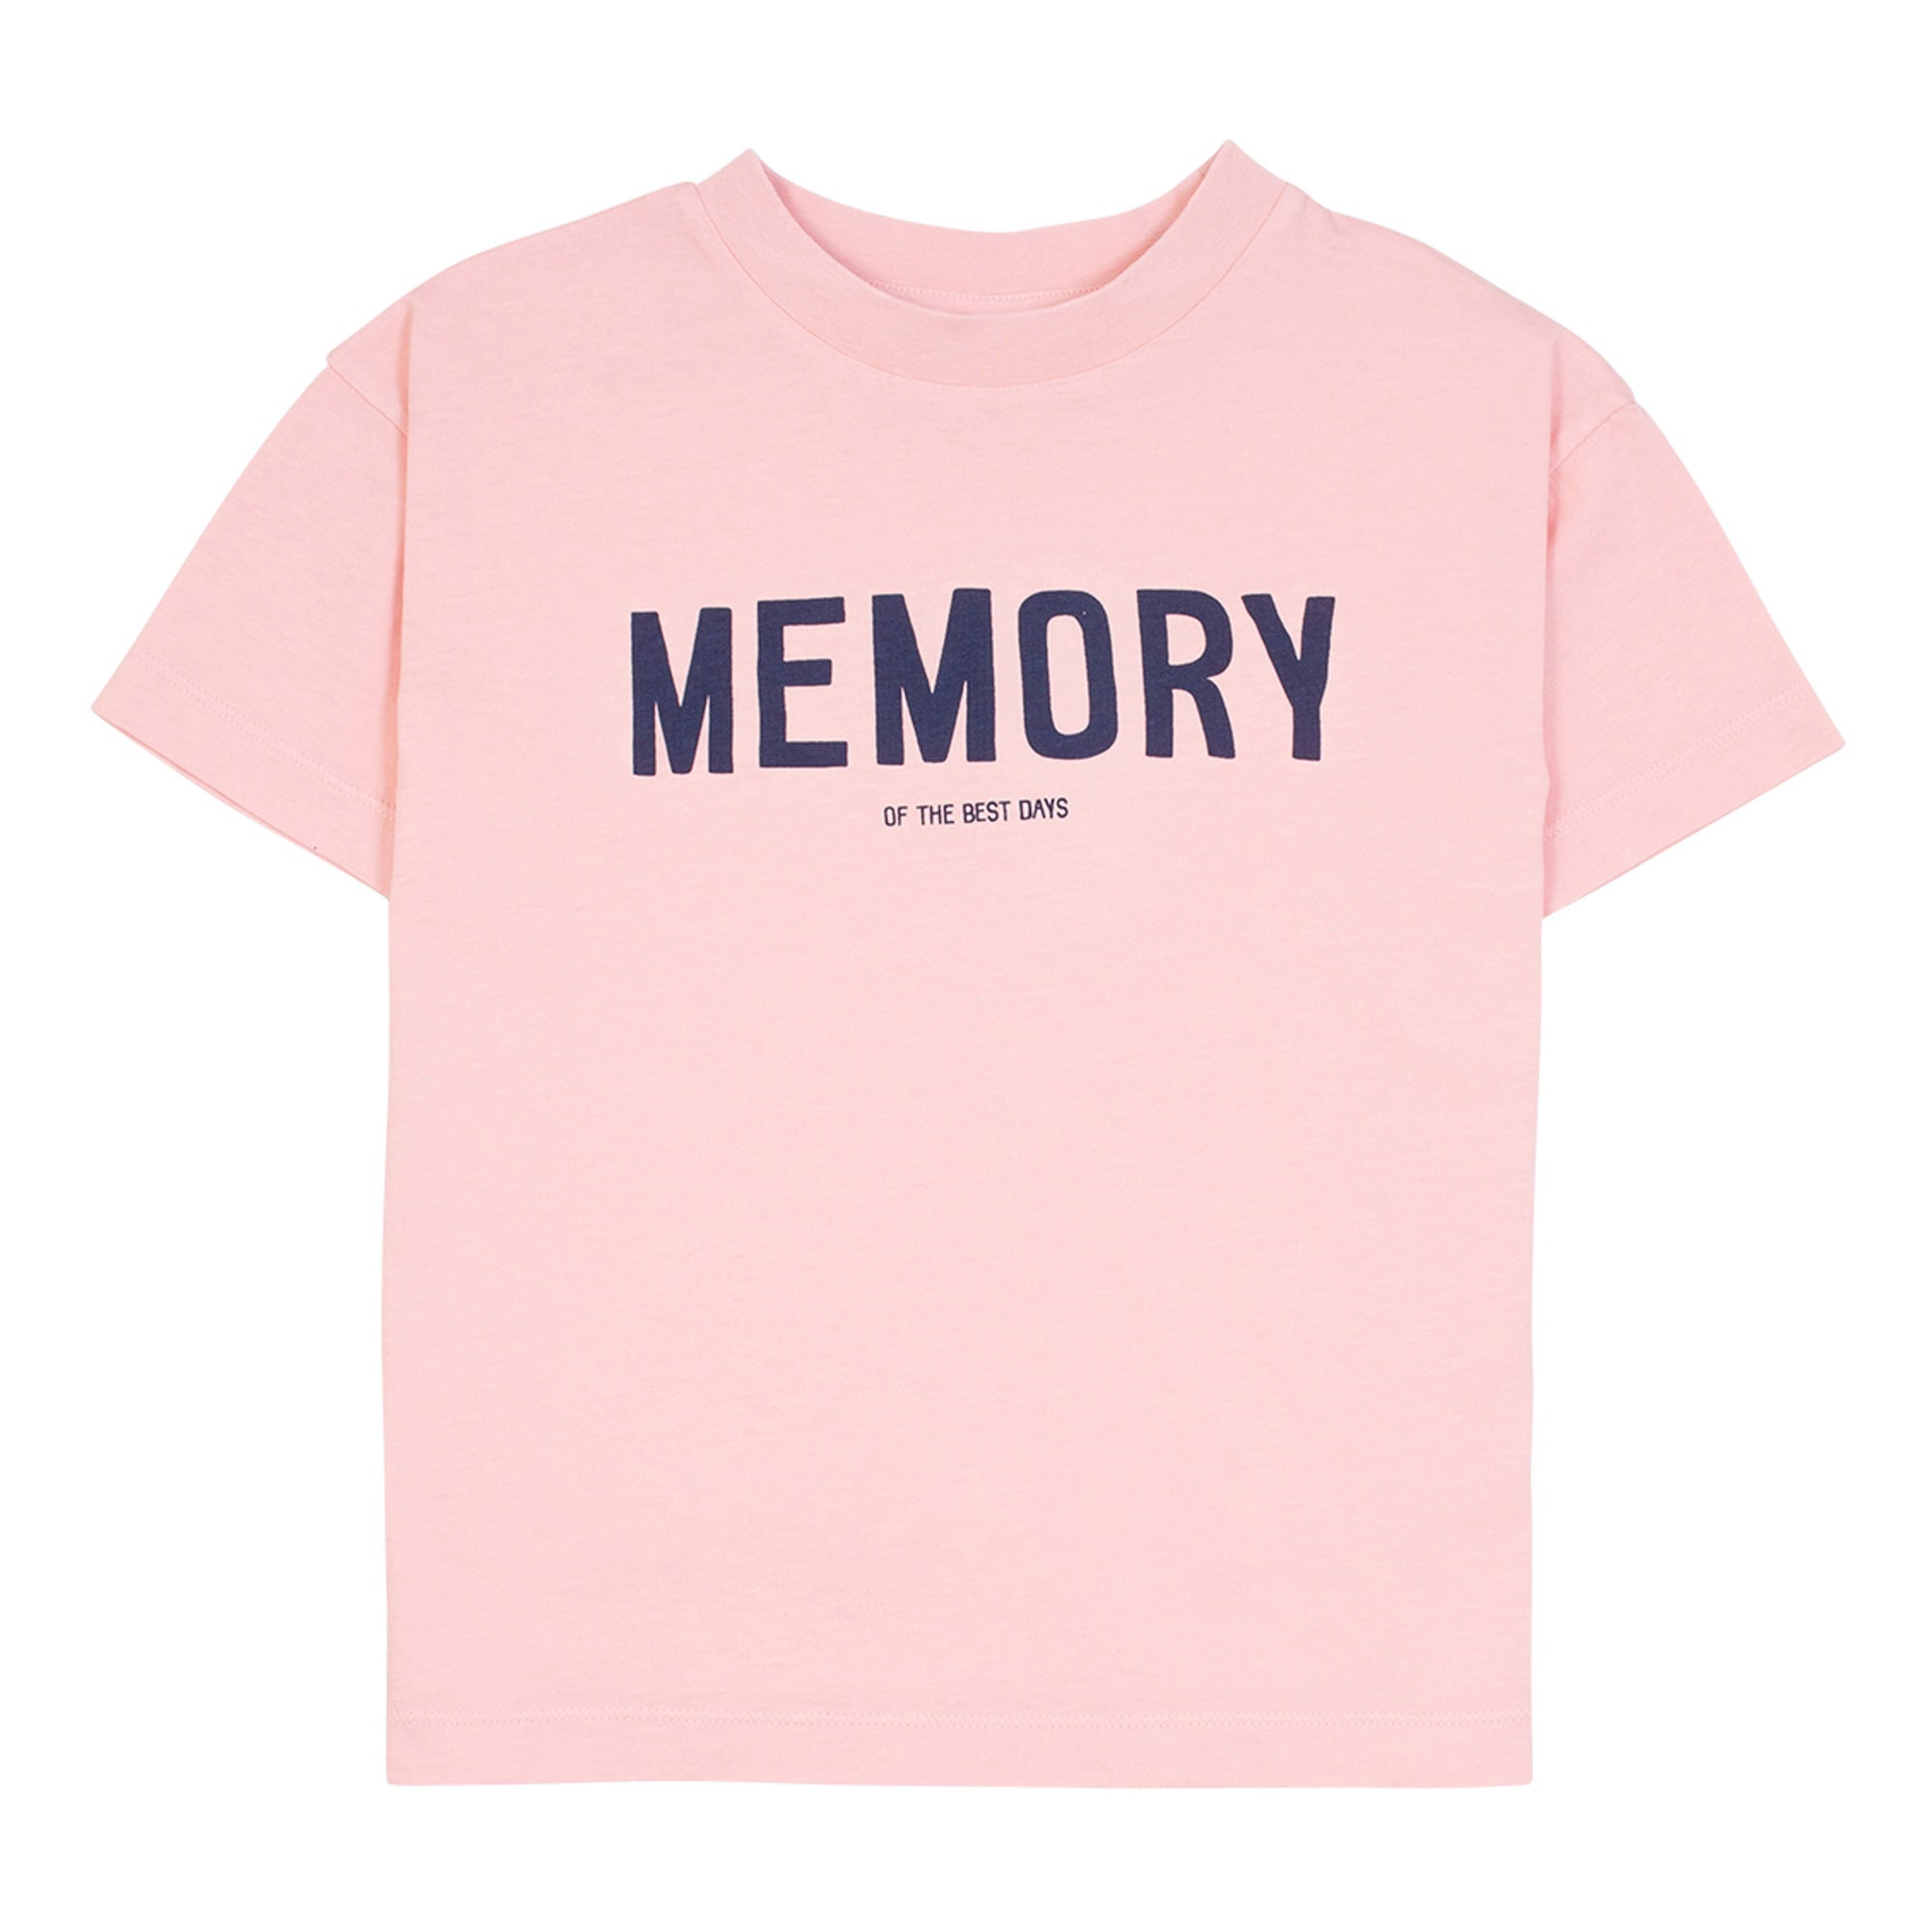 Memory Tee - Dust Pink